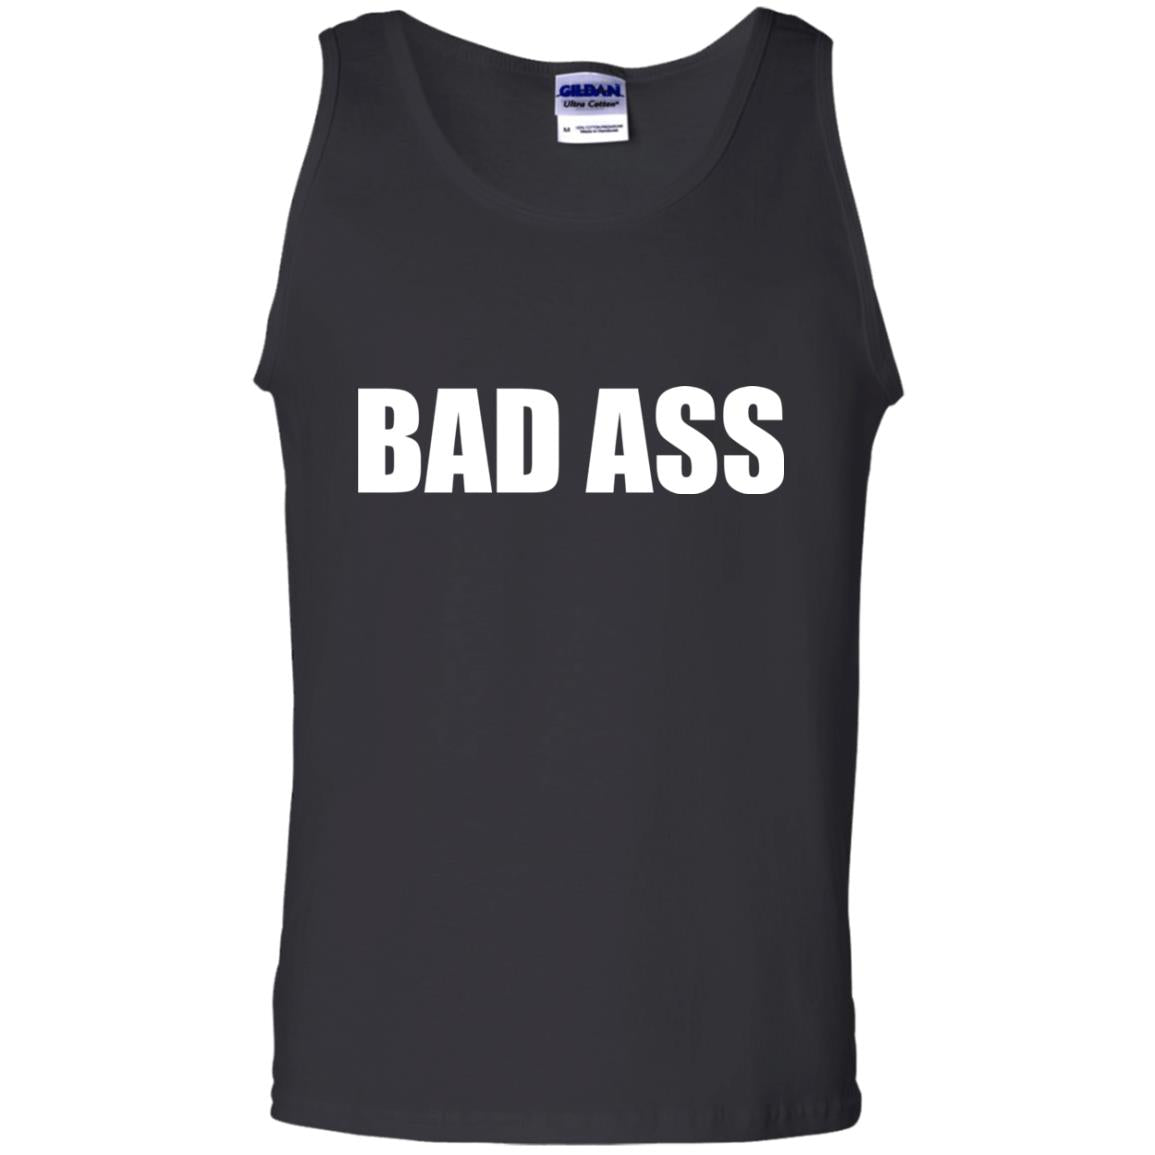 Badass Shirt For Women Or Men